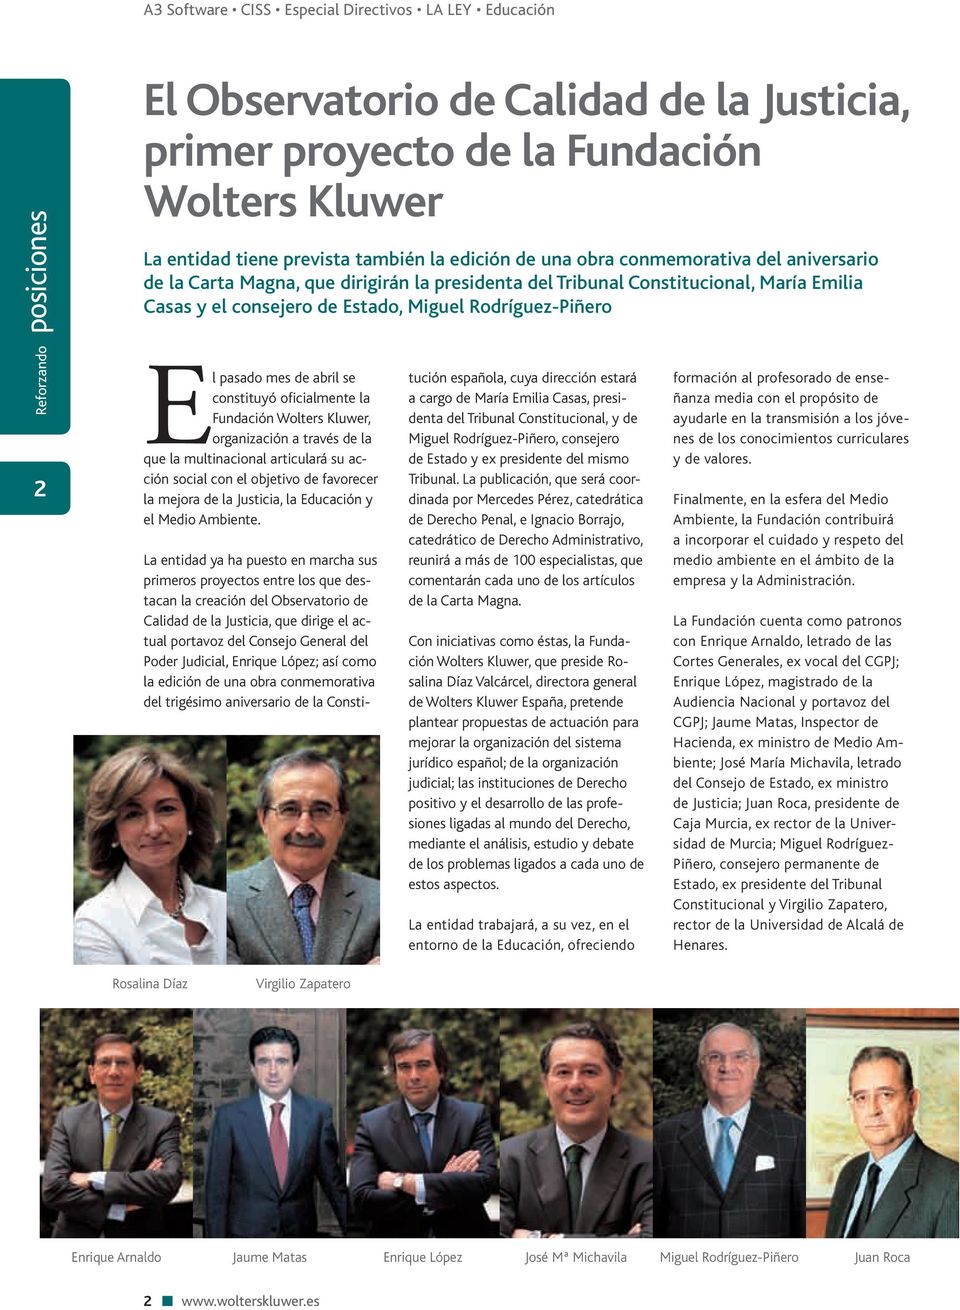 Kluwer, organización a través de la que la multinacional articulará su acción social con el objetivo de favorecer la mejora de la Justicia, la Educación y el Medio Ambiente.